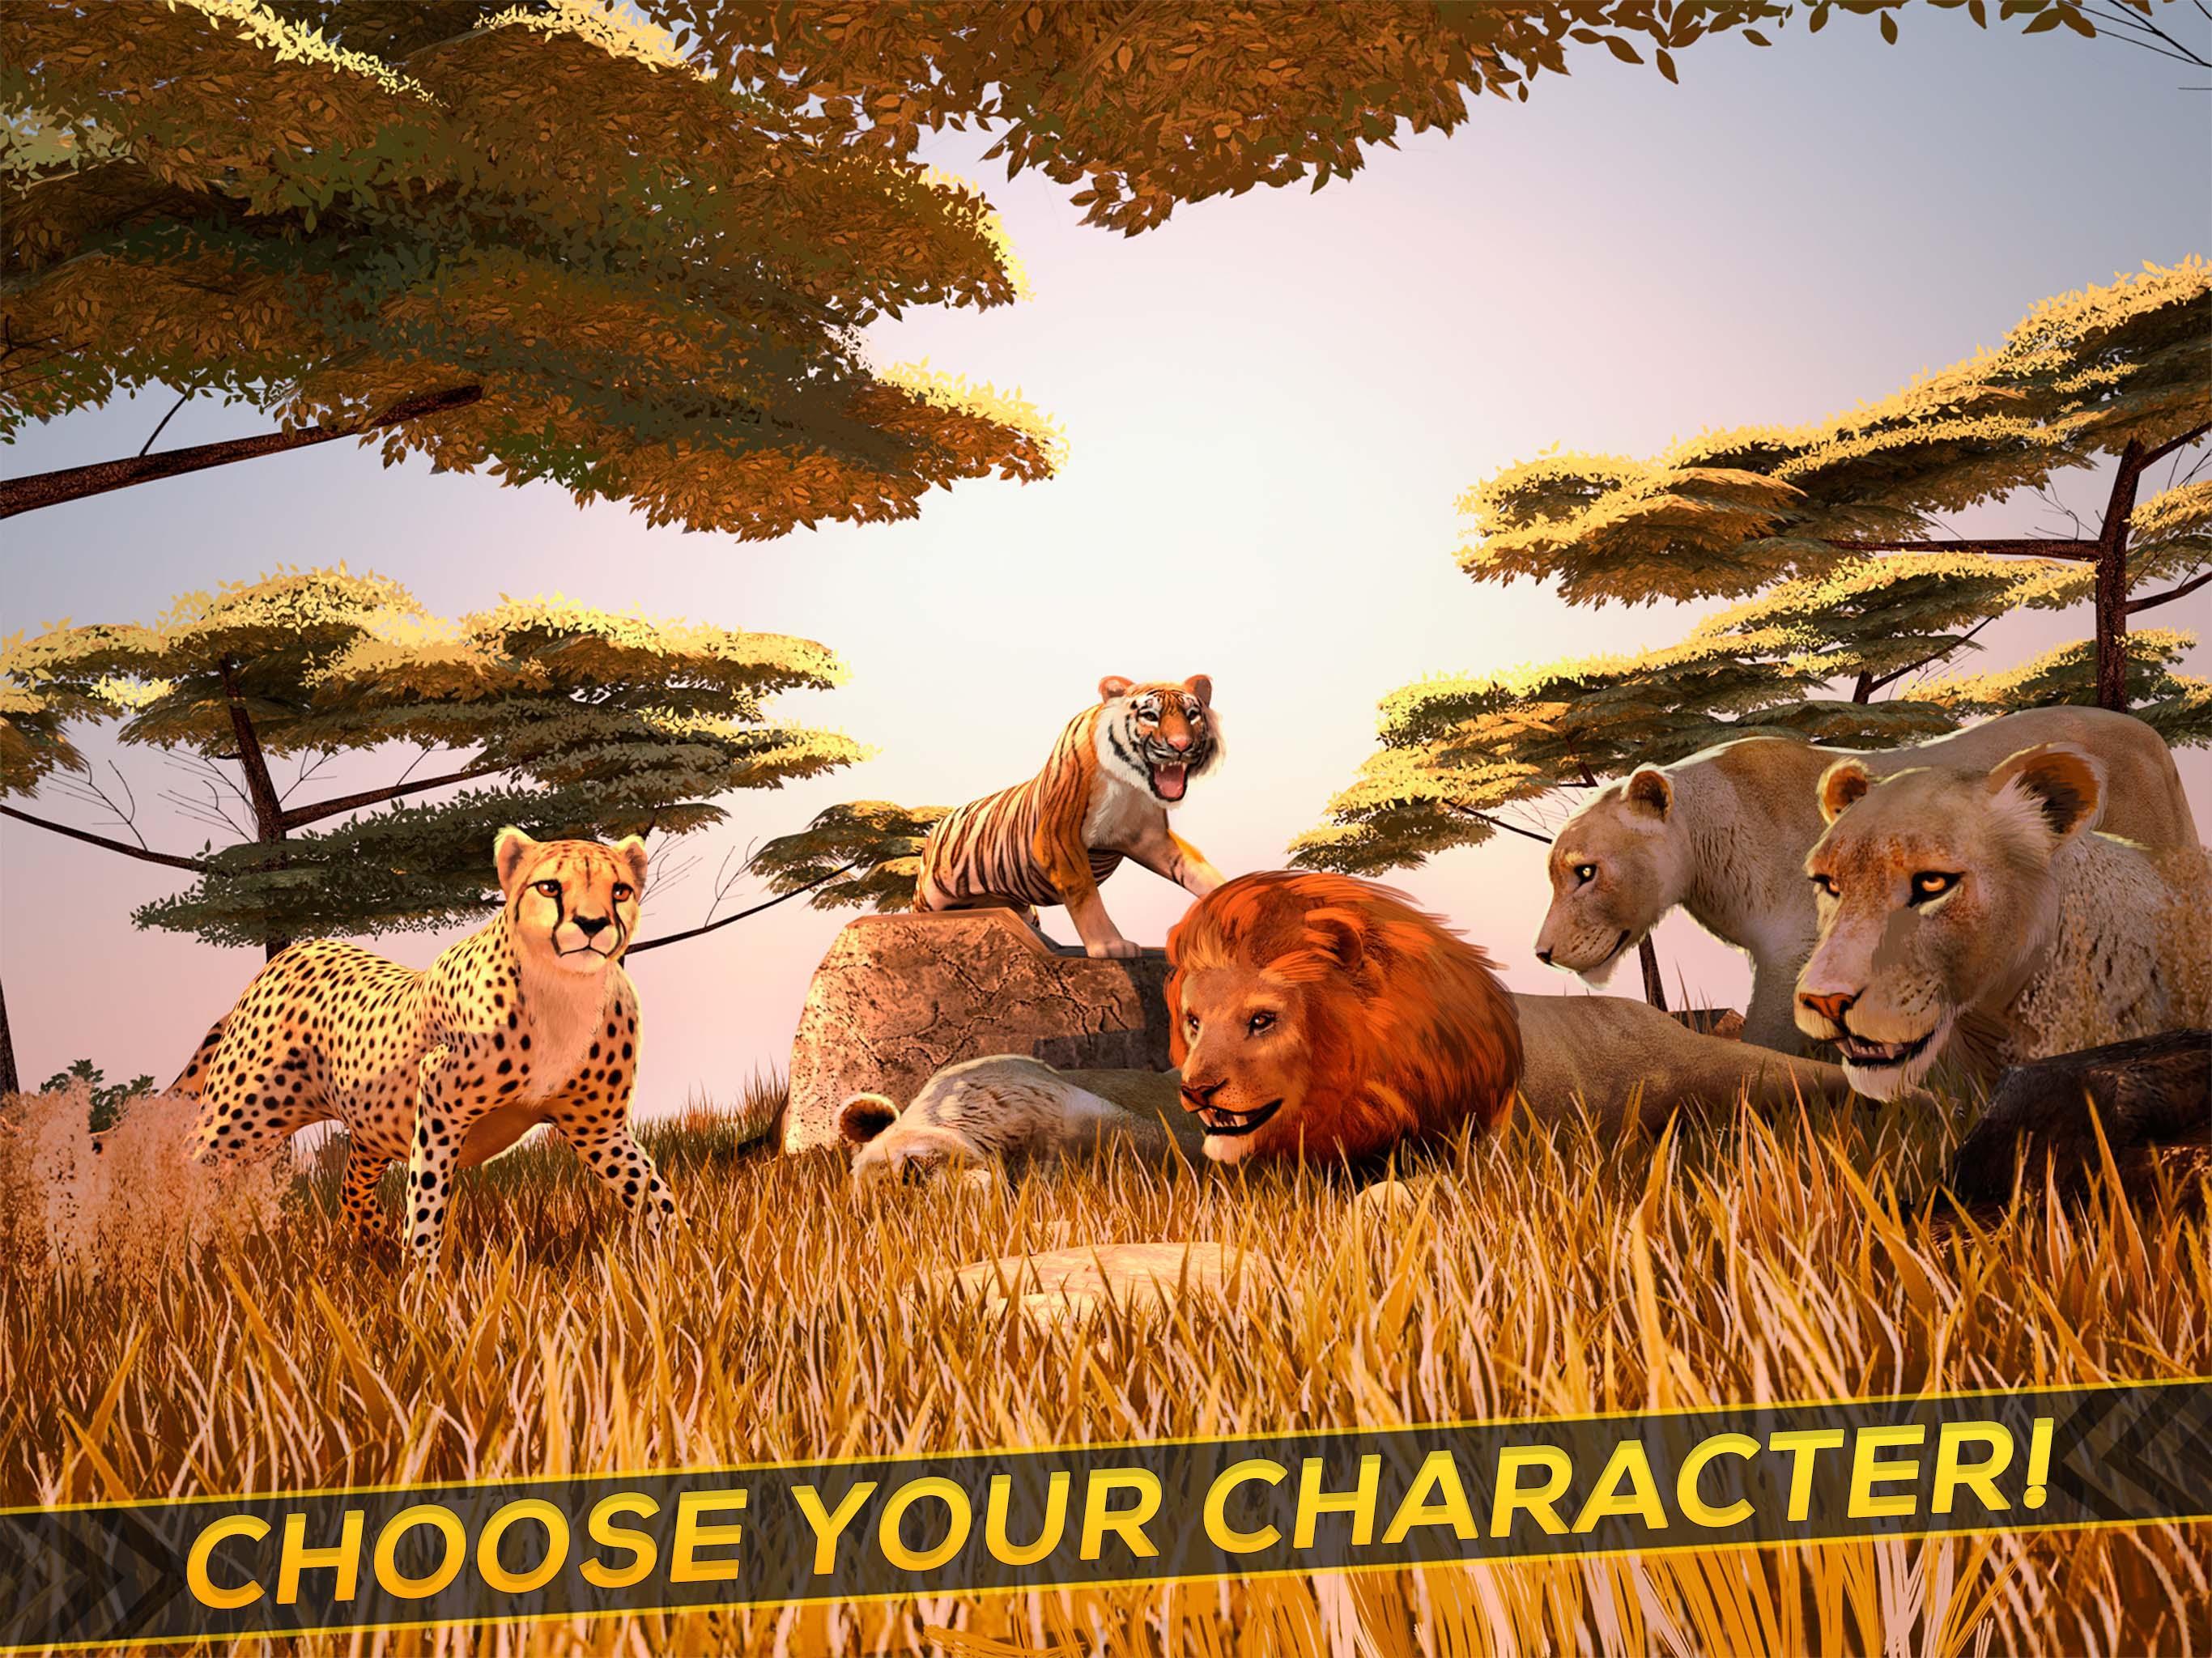 Wild life 3. Wild animals игра. Лучшие симуляторы животных на андроид. Звериный тройничок в диких условиях из игры Wild Life.